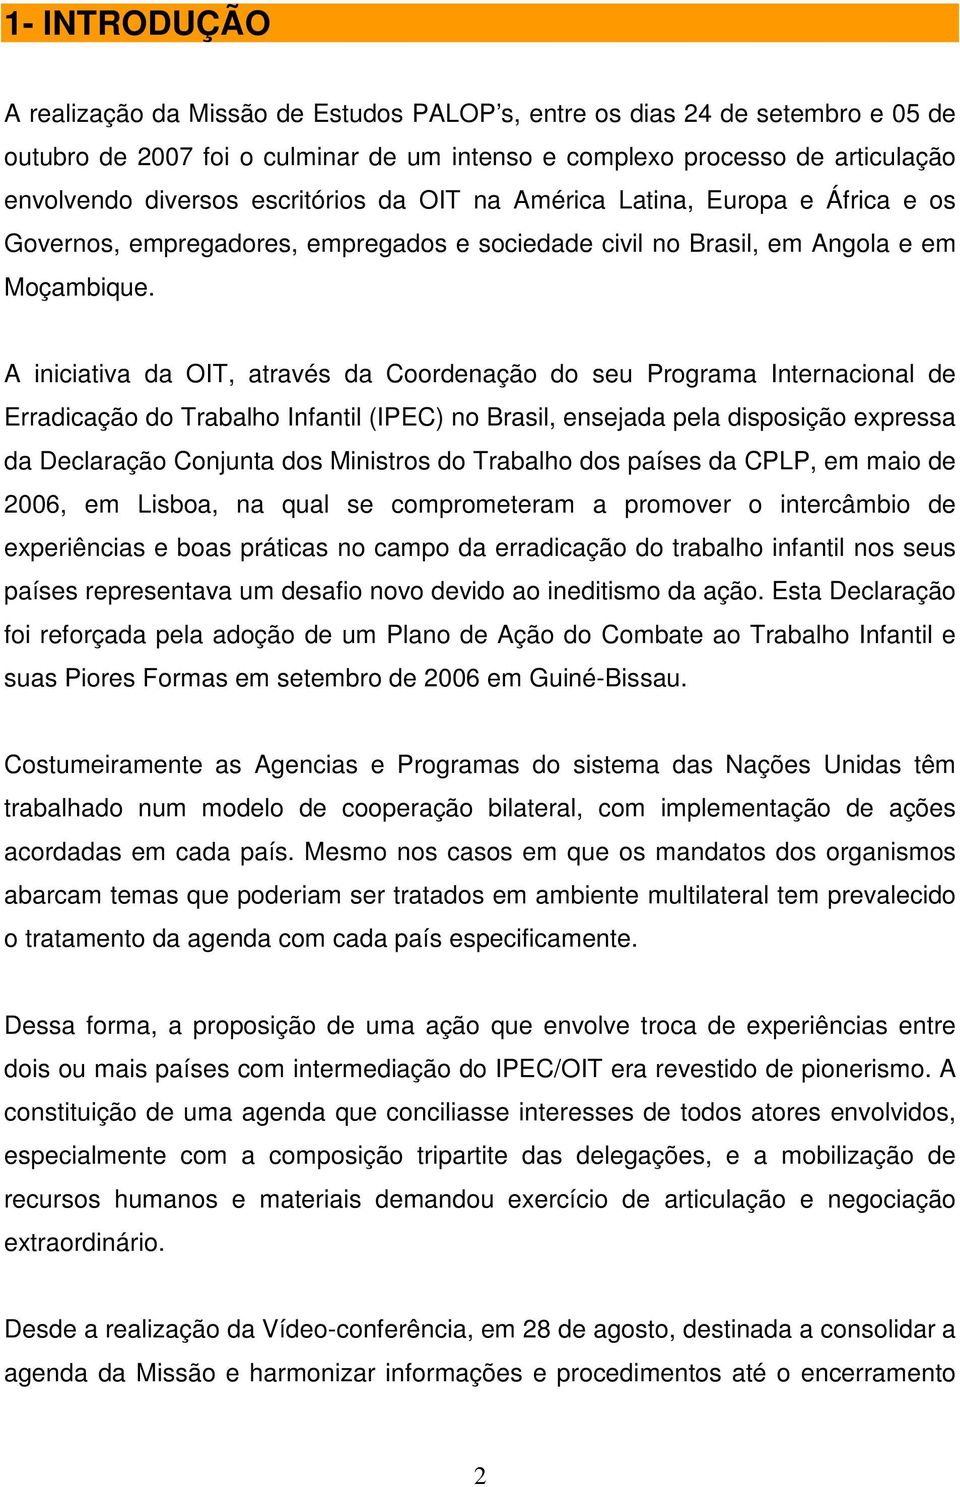 A iniciativa da OIT, através da Coordenação do seu Programa Internacional de Erradicação do Trabalho Infantil (IPEC) no Brasil, ensejada pela disposição expressa da Declaração Conjunta dos Ministros